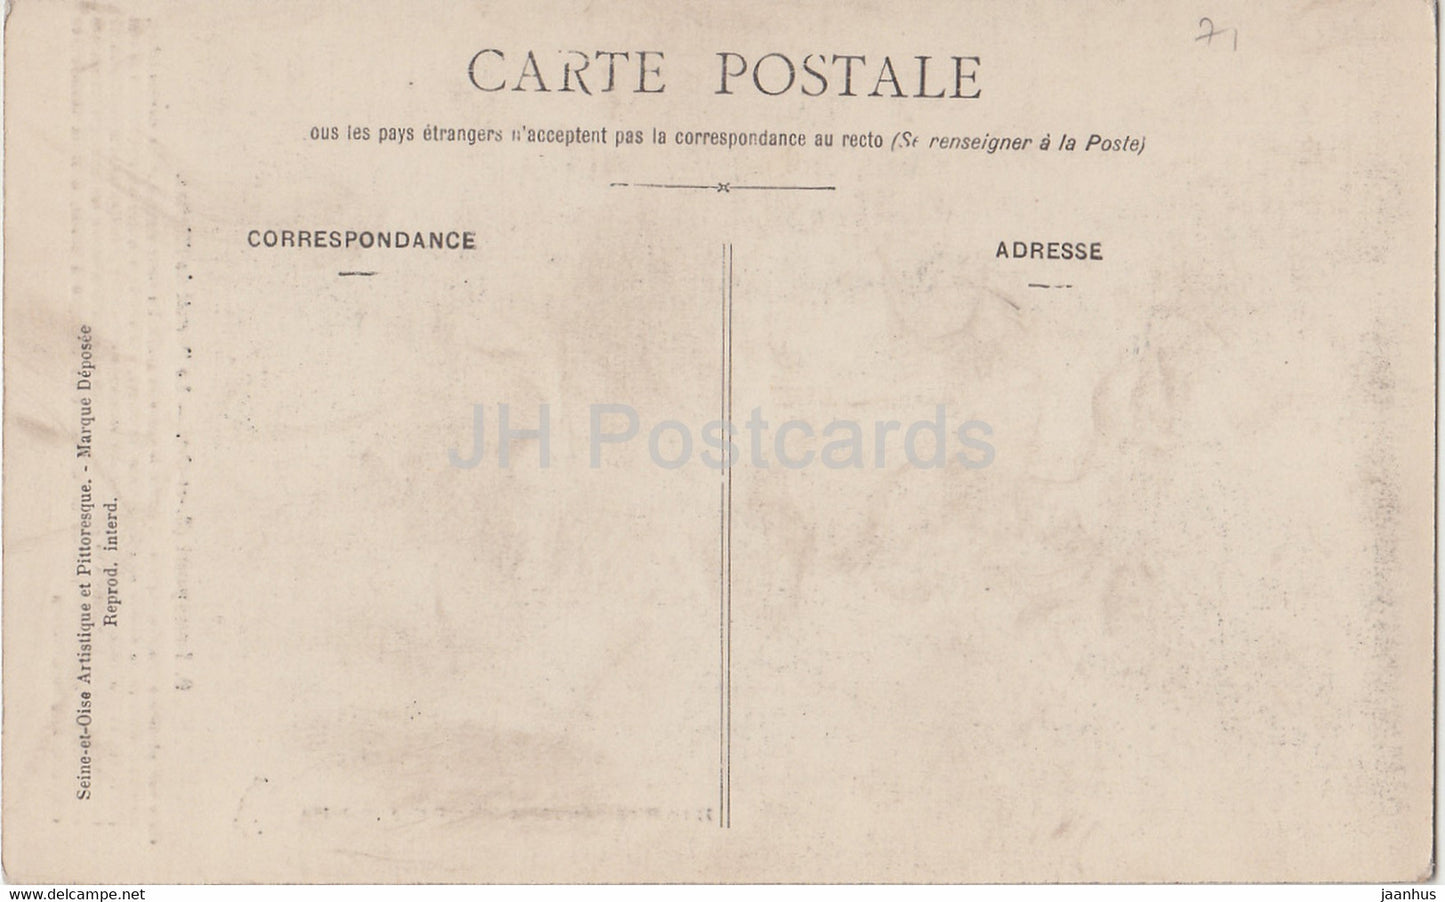 Longpont - Le Portail de l'Eglise - 9 - church - old postcard - France - unused